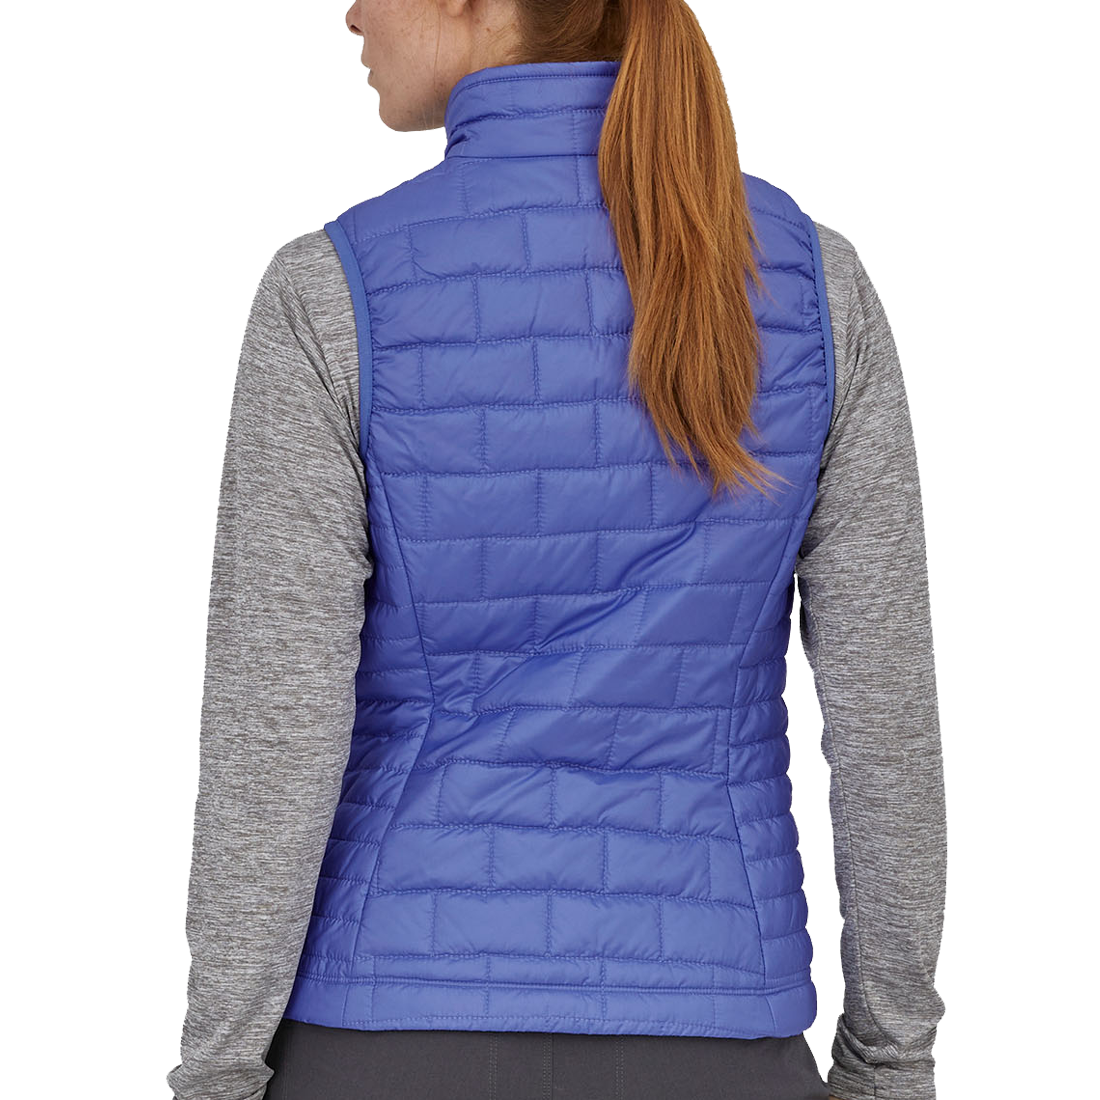 Women's Nano Puff Vest alternate view